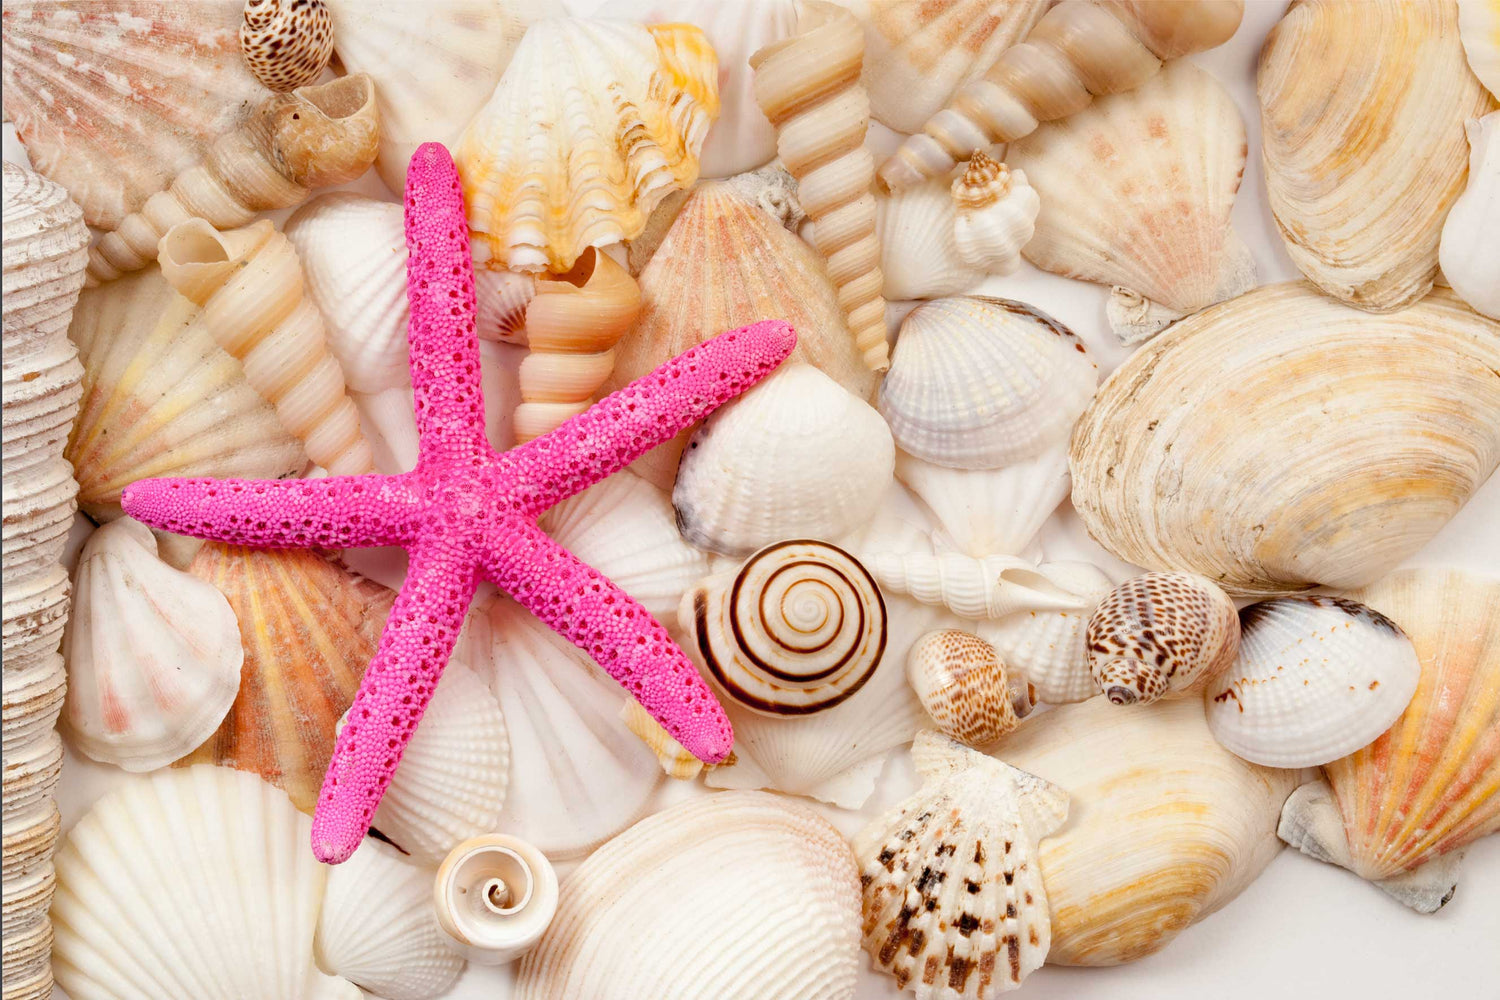 Buy Bulk Seashells for Crafts - Shells in Bulk - California Seashell